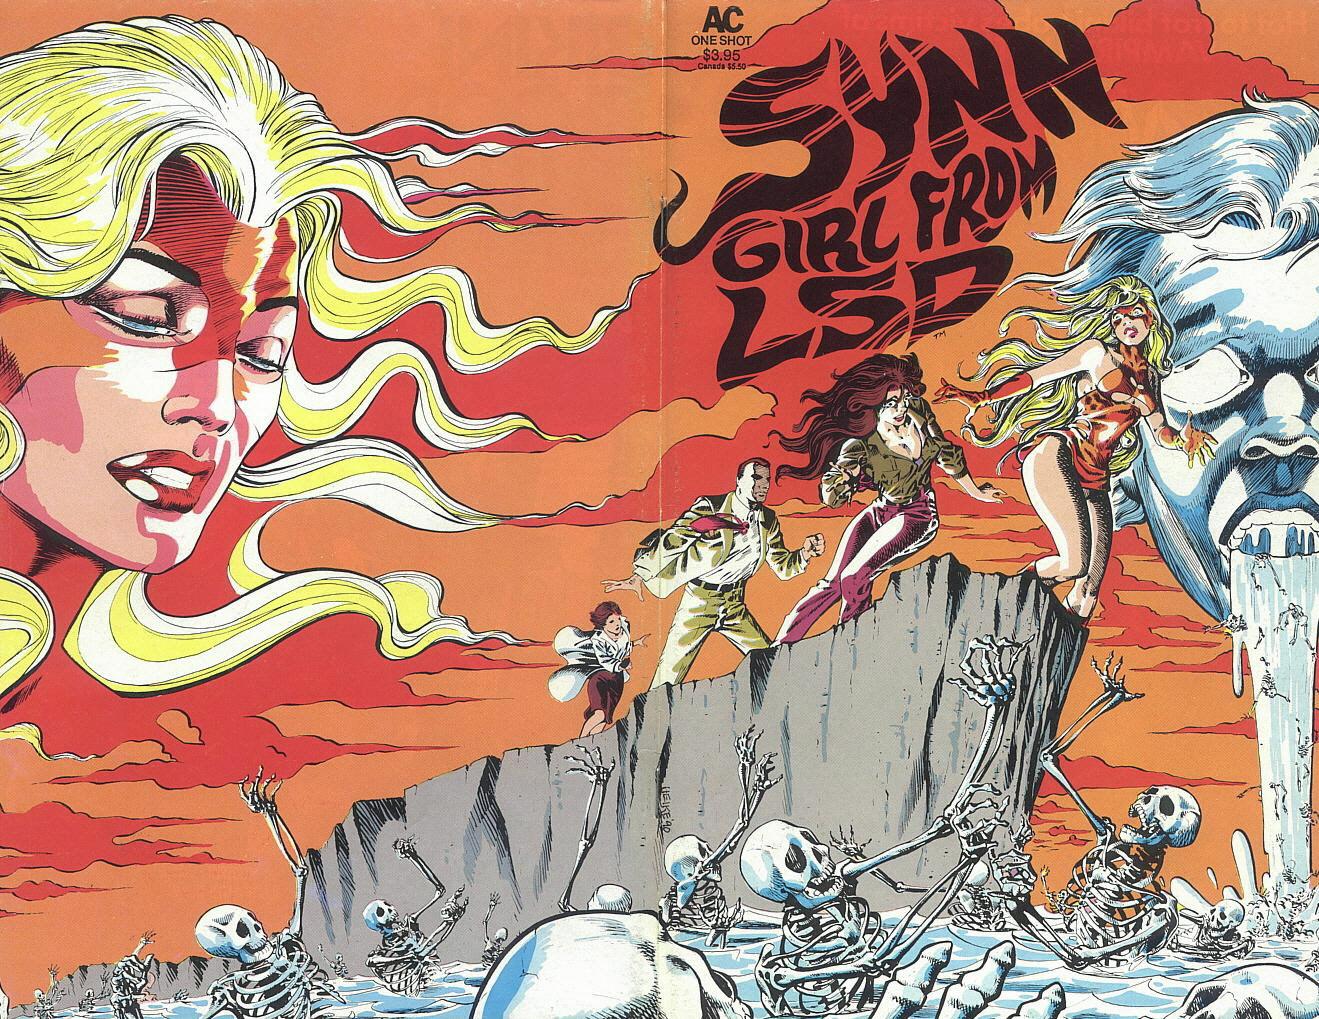 Read online Synn: Girl From LSD comic -  Issue # Full - 12